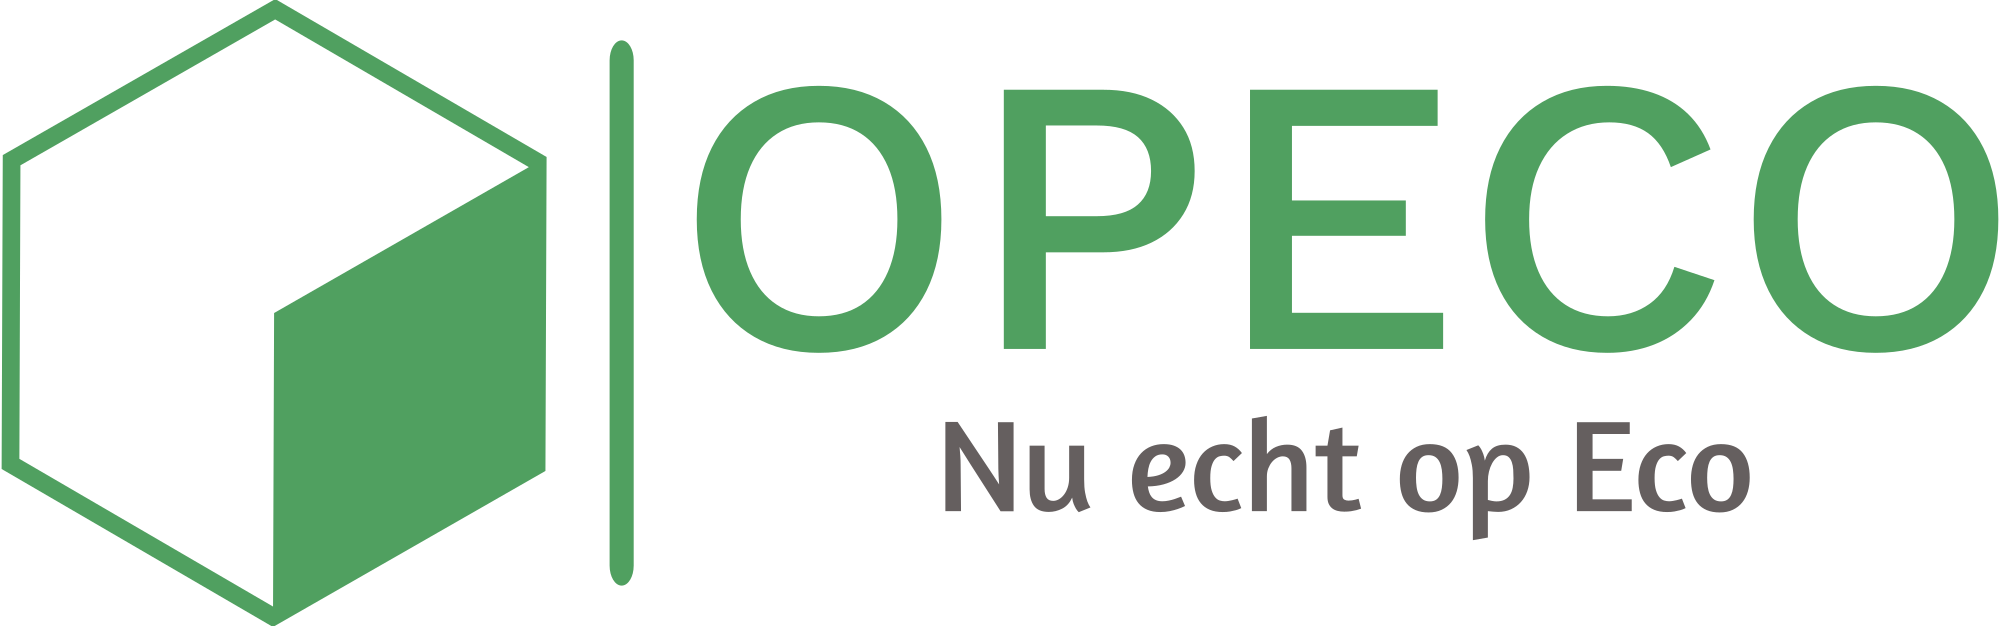 www.Opeco.nl